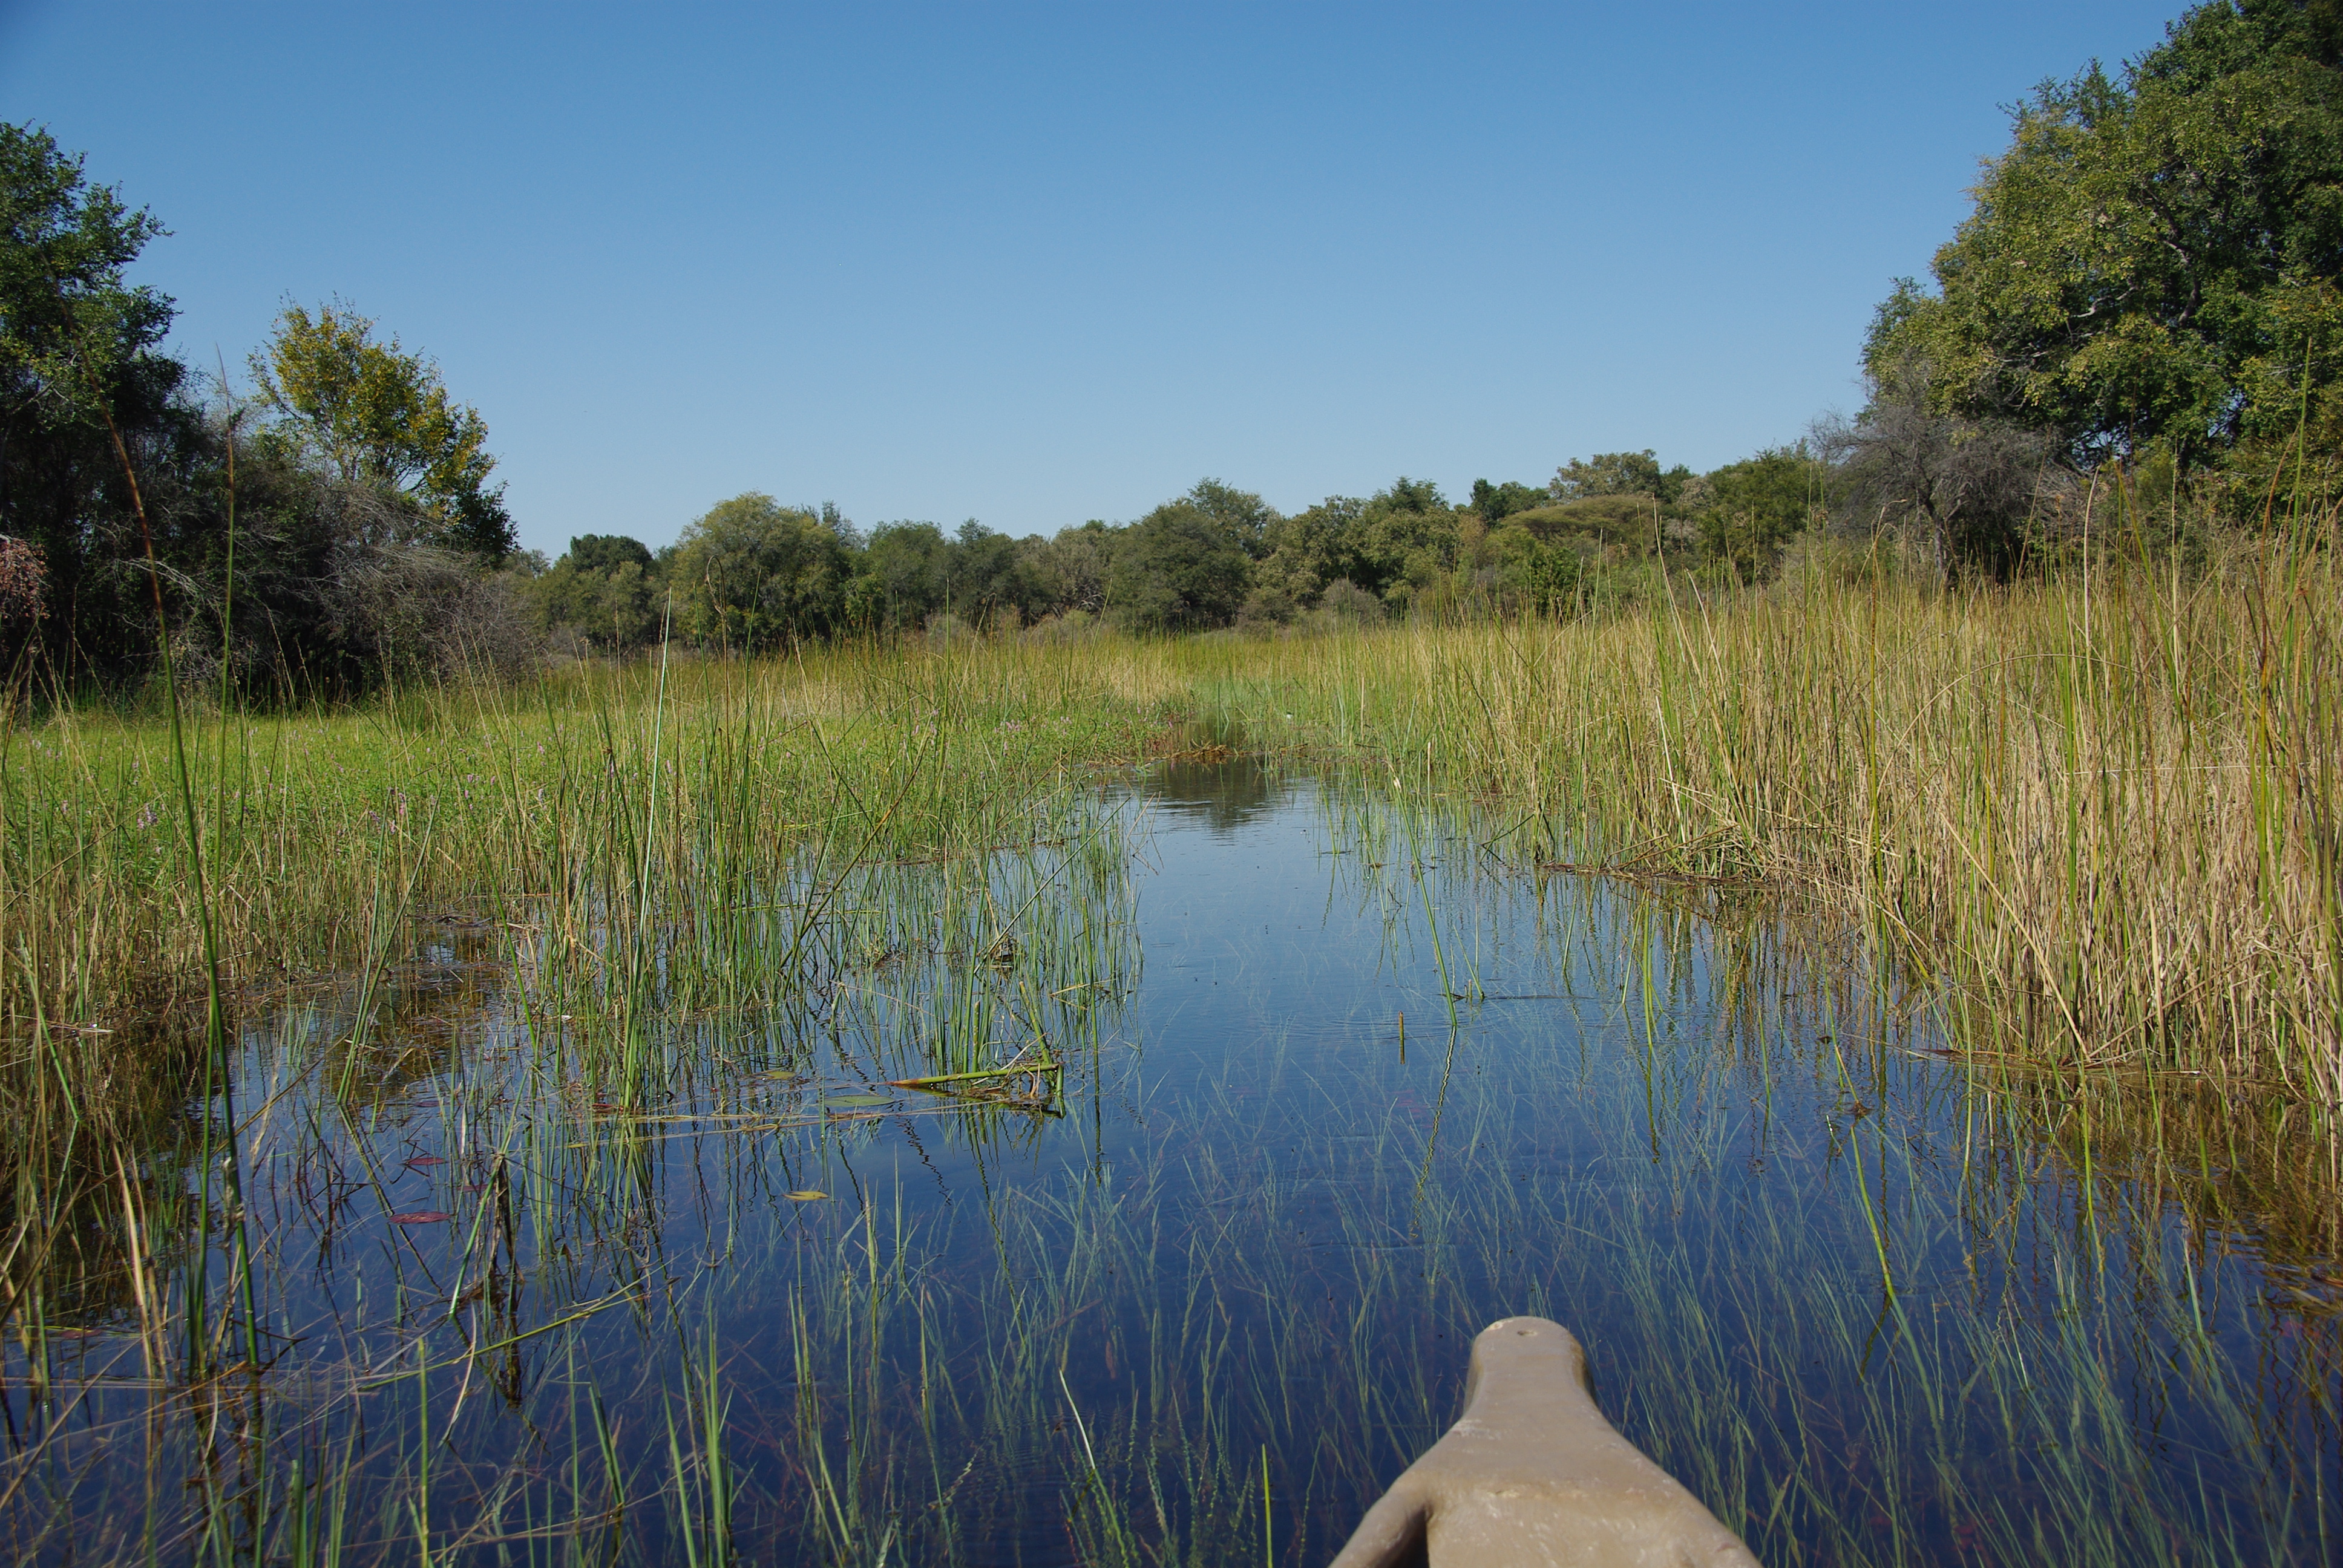 Entrée du mokoro dans une zone marécageuse intercalée entre plusieurs ilots boisés, Chief's camp, Delta de l'Okavango, Botswana.